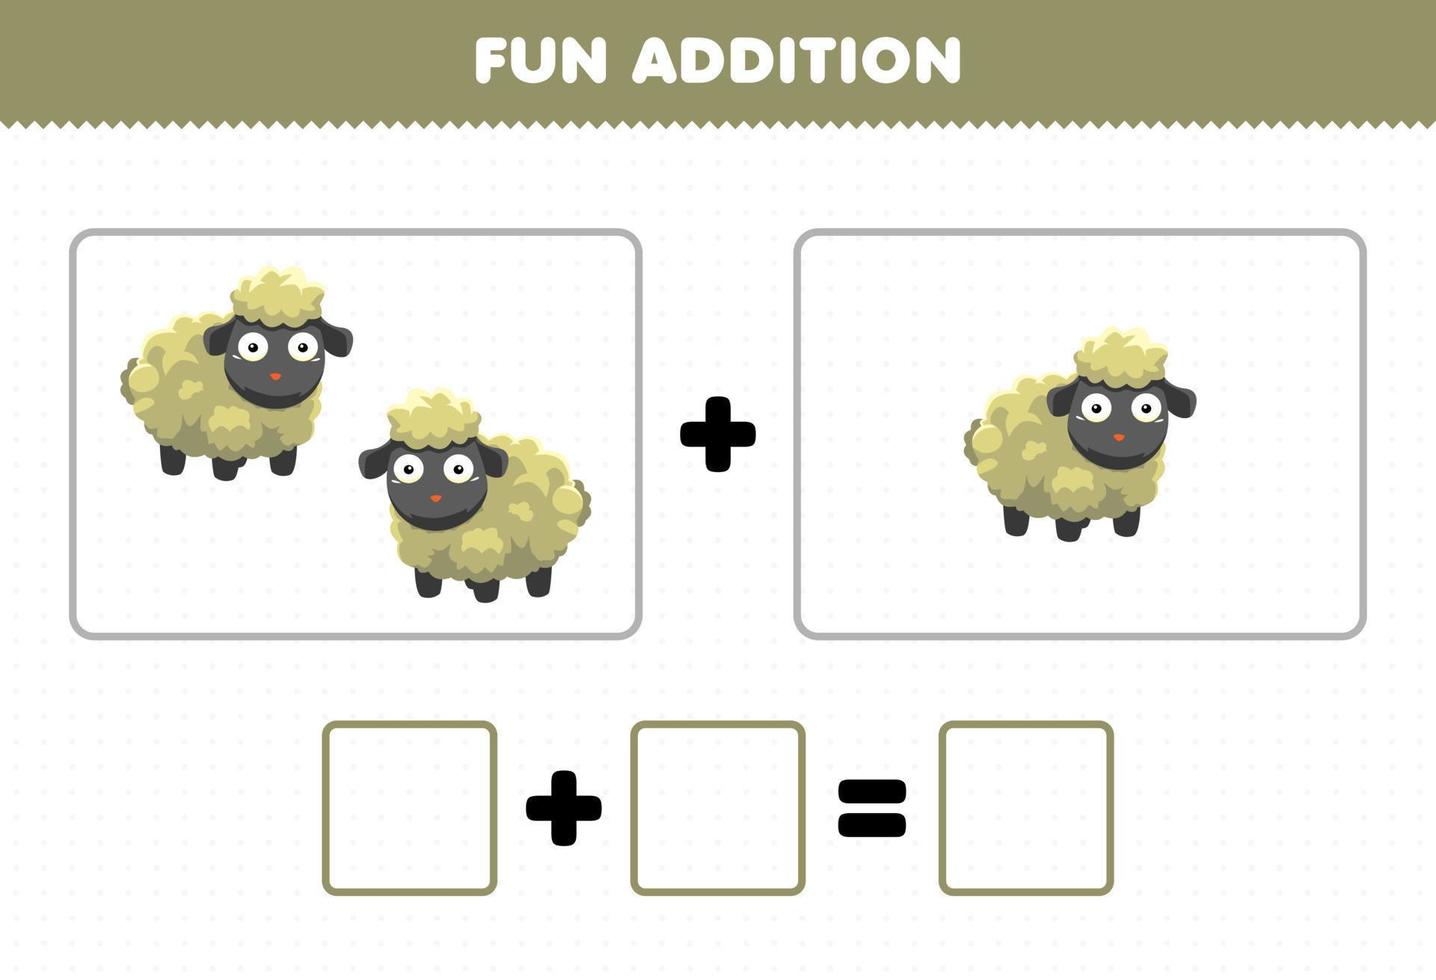 jeu éducatif pour les enfants ajout amusant en comptant la feuille de calcul des images de moutons d'animaux de dessin animé mignon vecteur